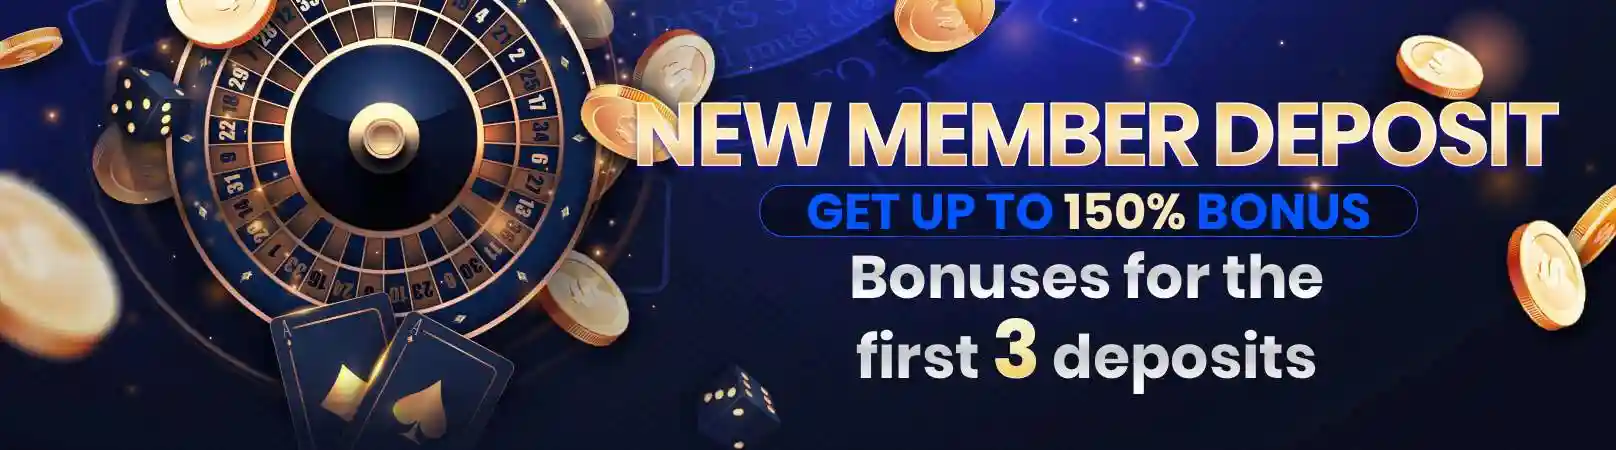 New-Member-Bonus-get-150-Deposit Bonus